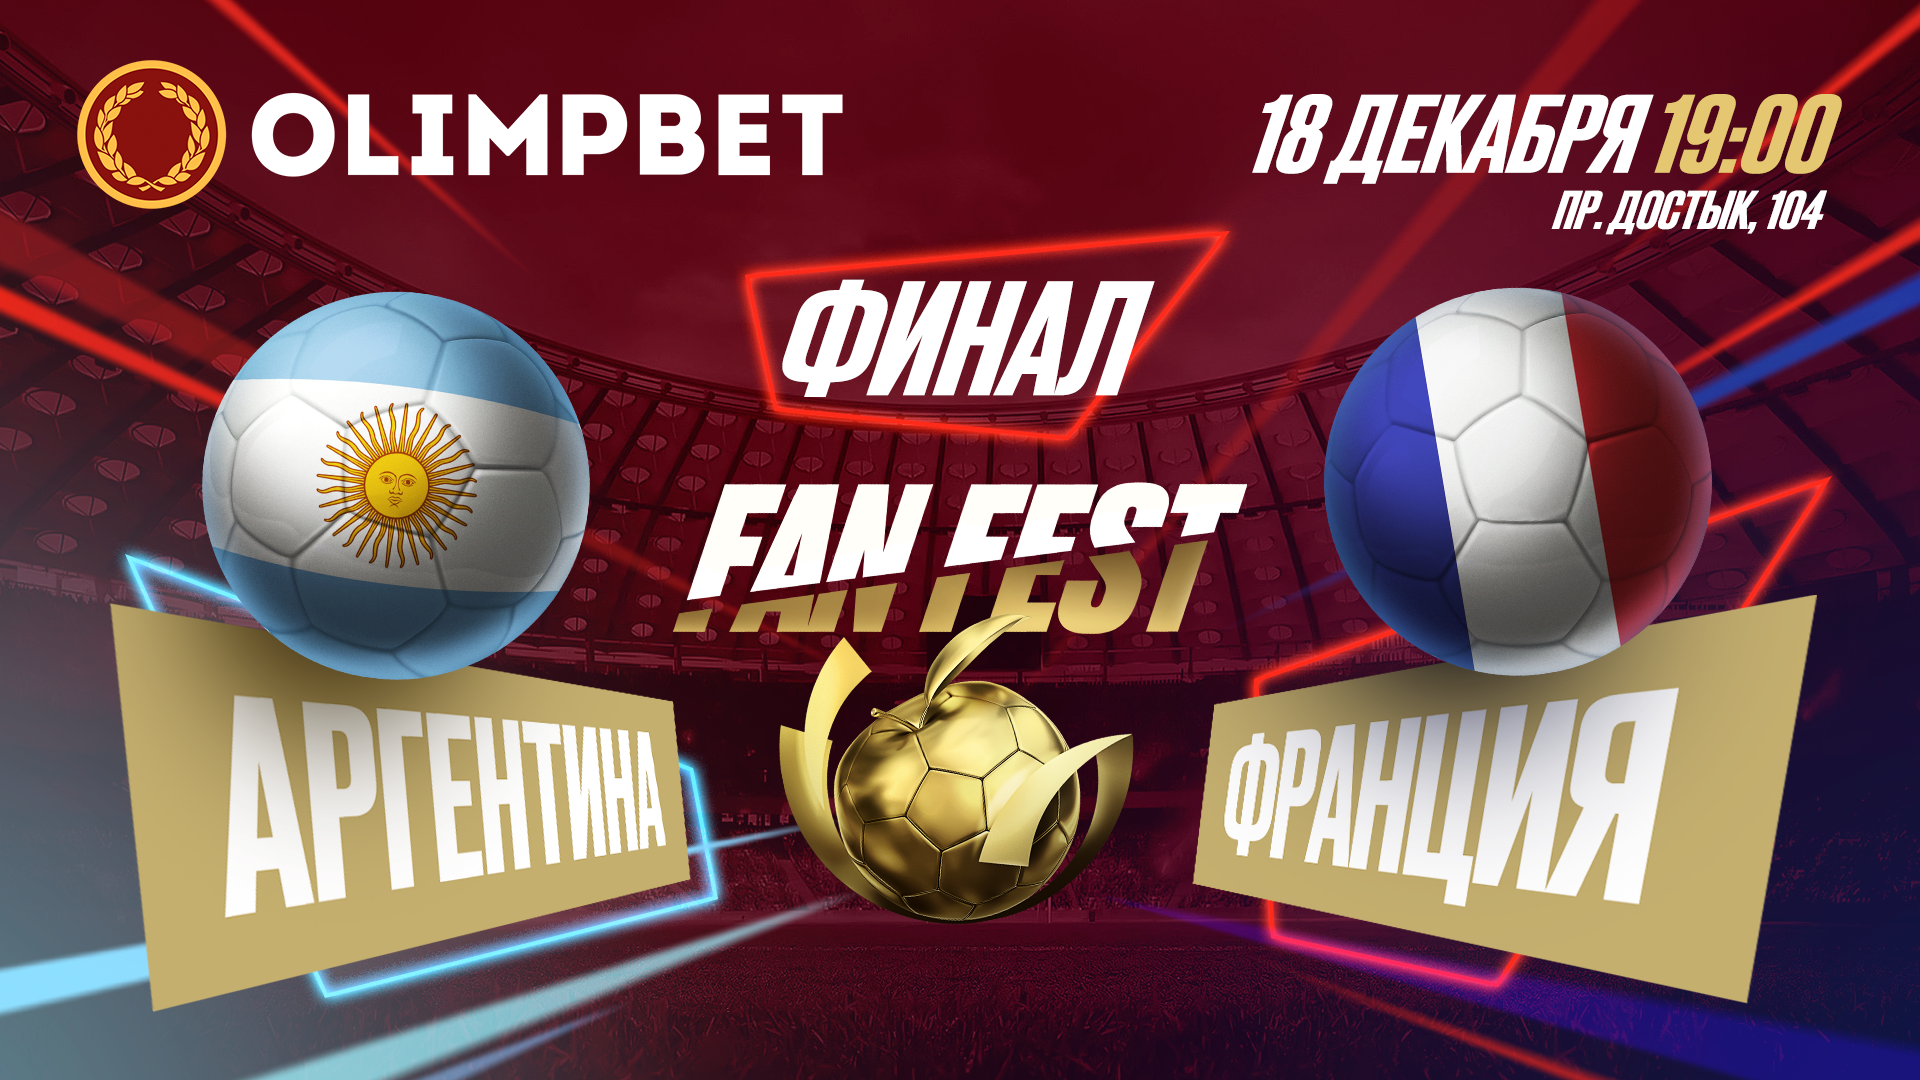 Olimpbet организует просмотр финала ЧМ в Алматы